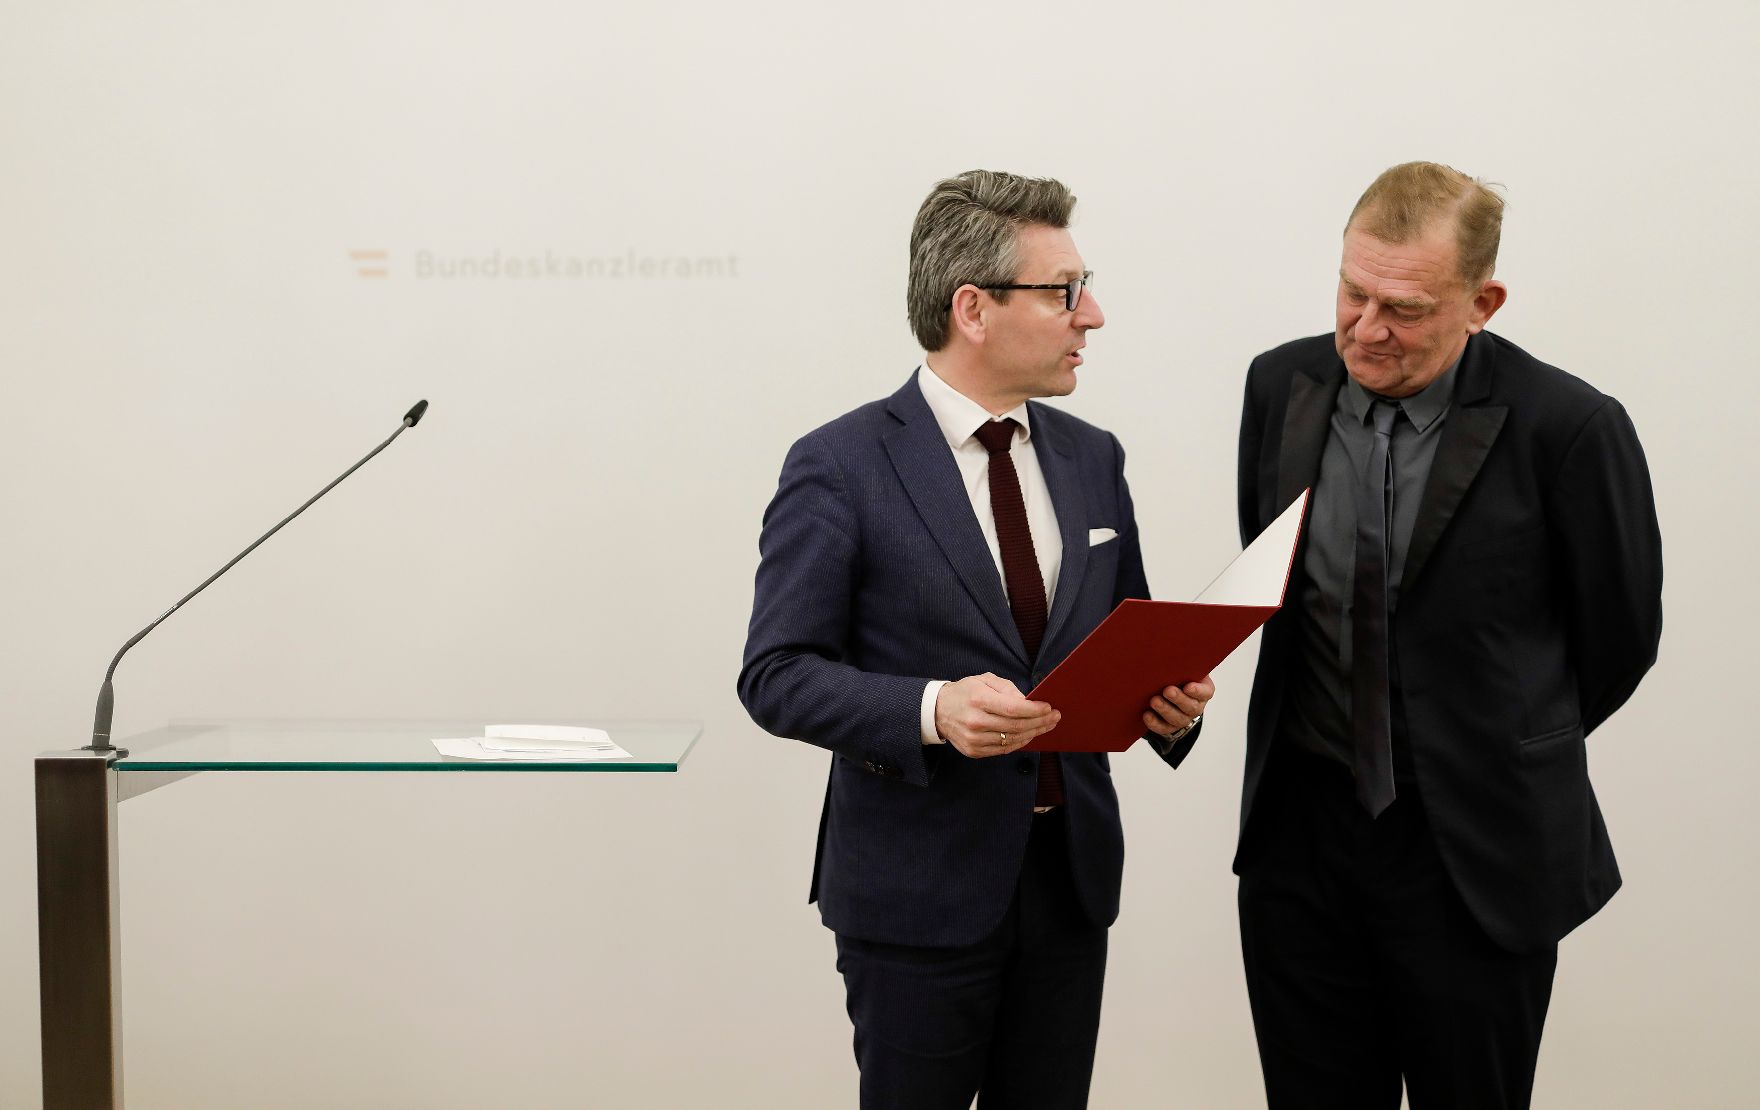 Am 25. März 2019 überreichte Sektionschef Jürgen Meindl (l.) die Urkunde, mit der Martin Zauner (r.) der Berufstitel Kammerschauspieler verliehen wurde.